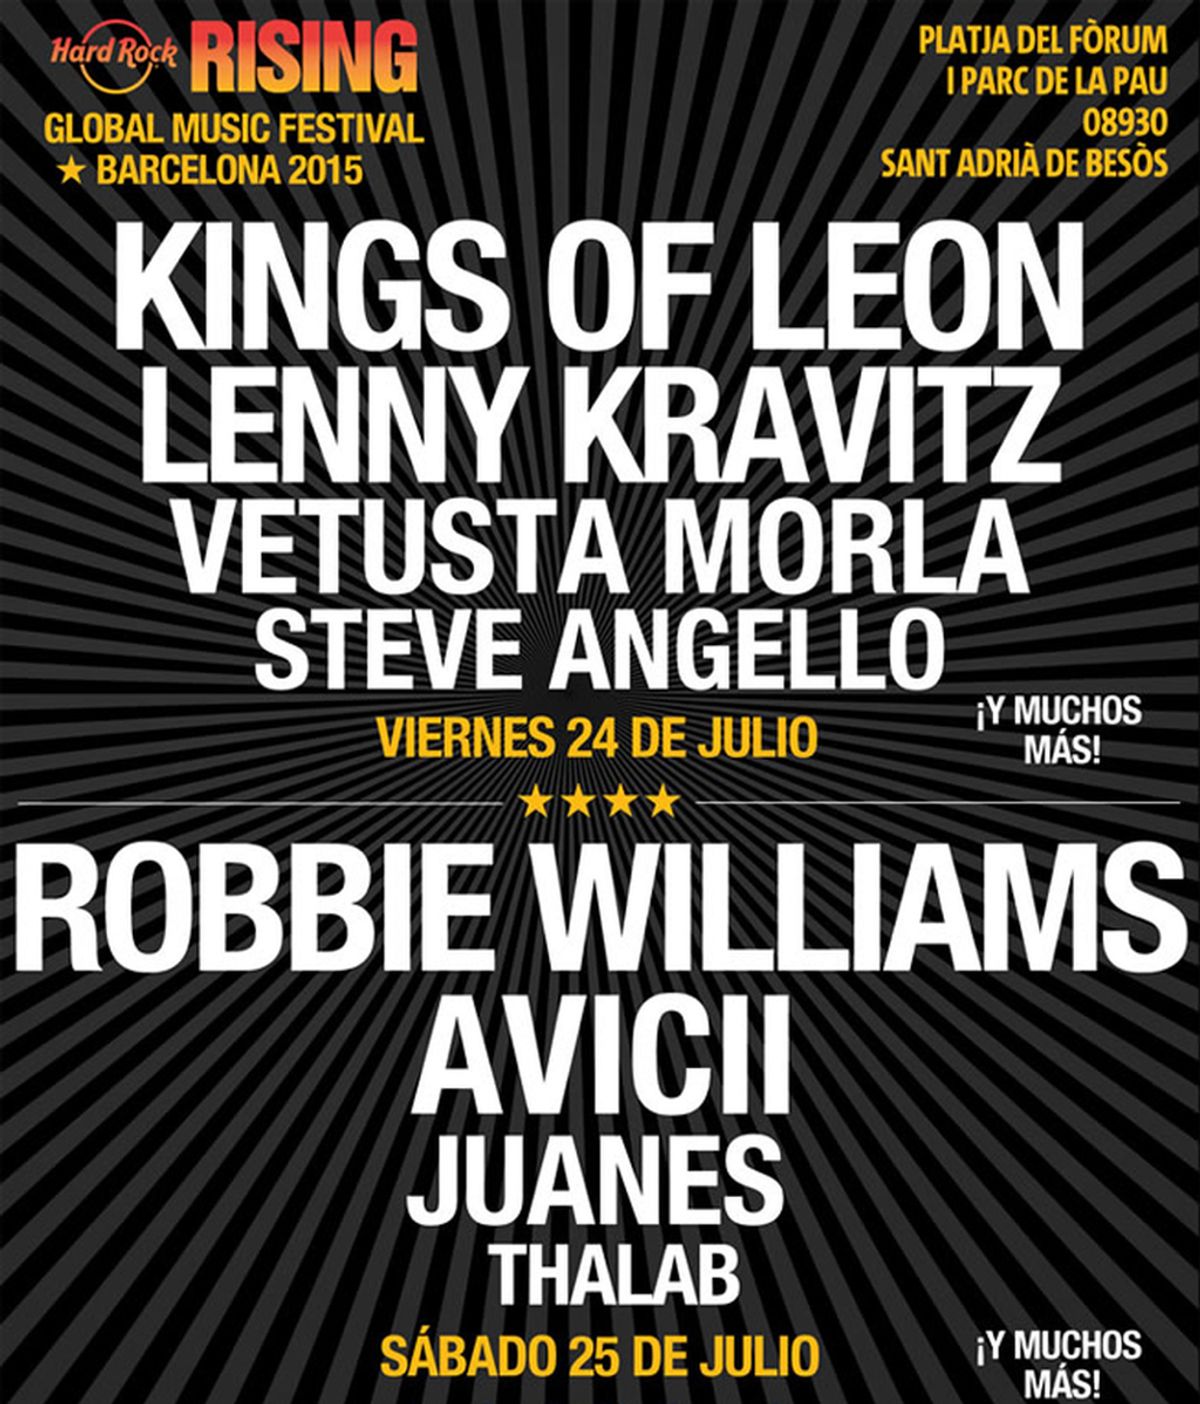 Llega a España el Hard Rock Rising Festival con un cartel que incluye entre otros a Robbie Williams, Lenny Kravitz, Kings of Leon y Avicii